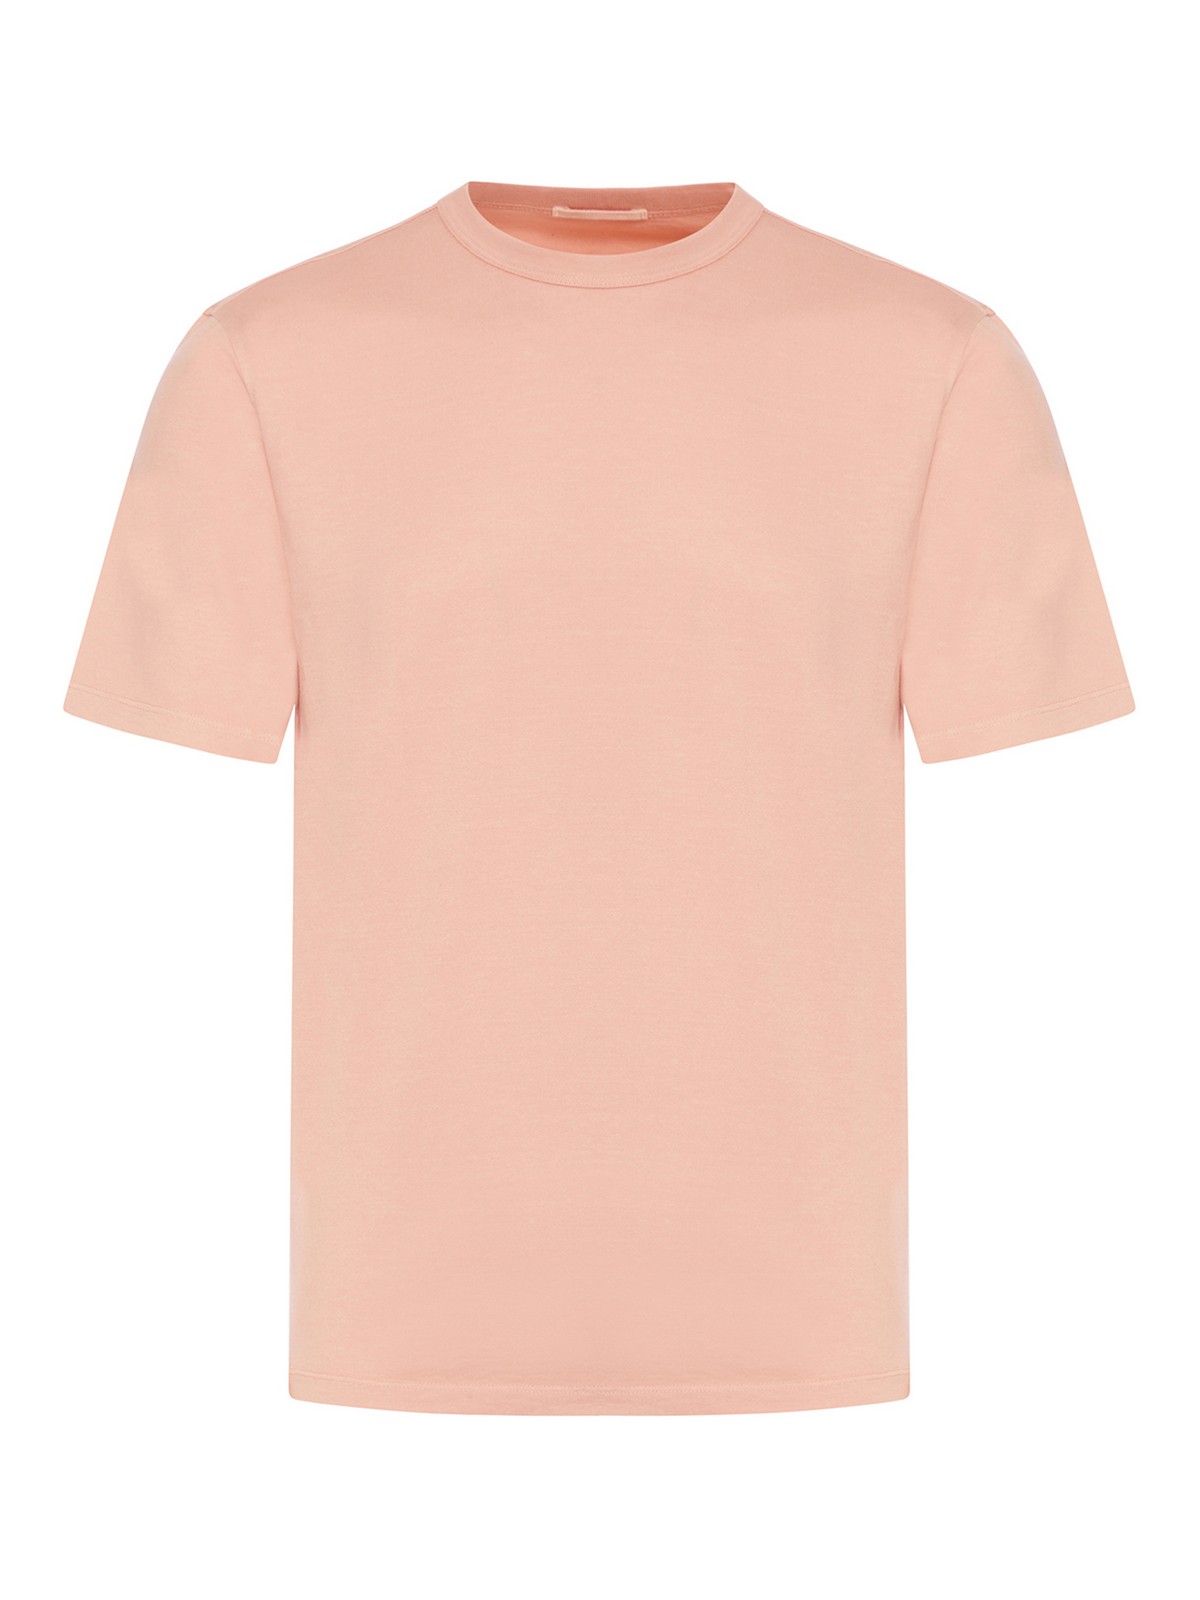 Camisetas Ten C - Camiseta - Color Carne Y Neutral - 22CTCUH02194508